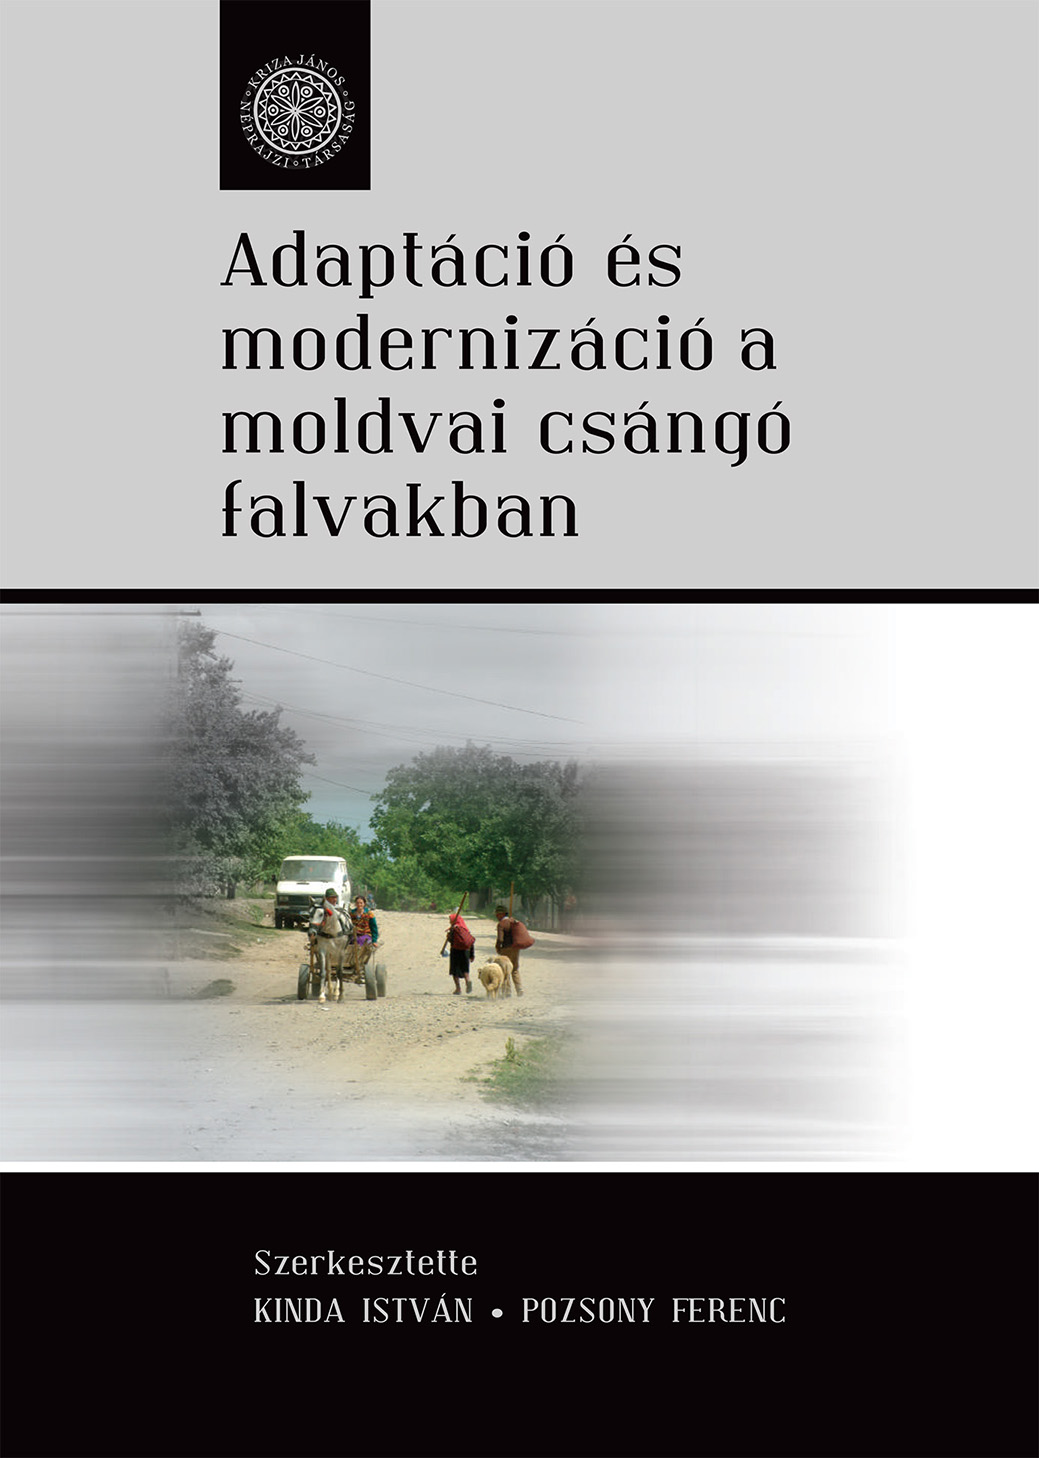 [Adaptaţie şi modernizaţie în satele ceangăilor din Moldova] Adaptáció és modernizáció a moldvai csángó falvakban